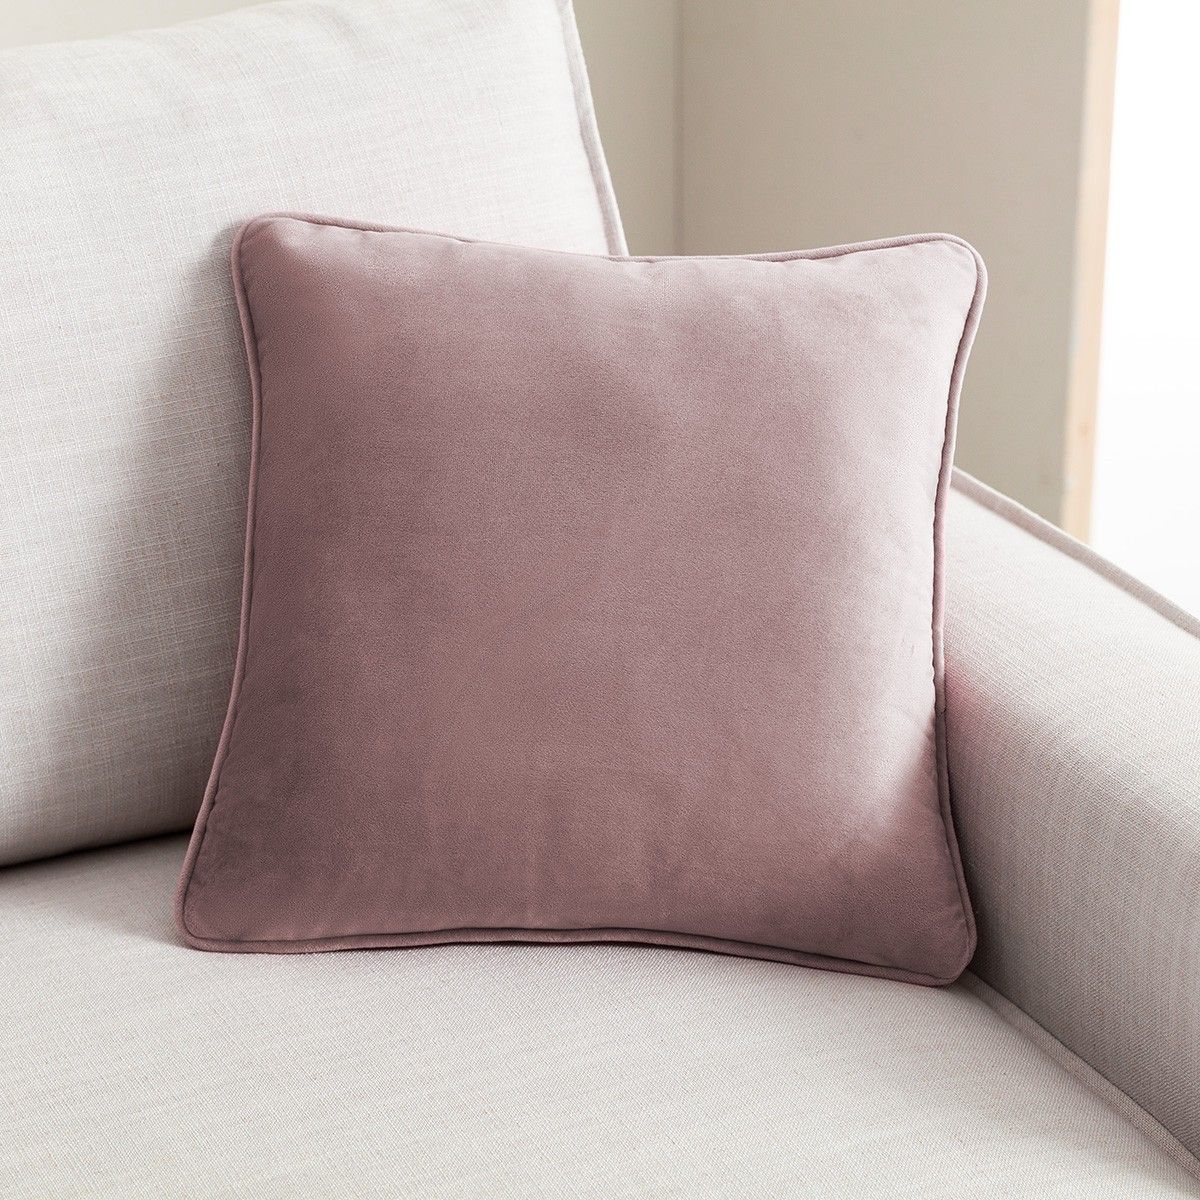 Διακοσμητική μαξιλαροθήκη Winter 711/20 purple pink gofis home